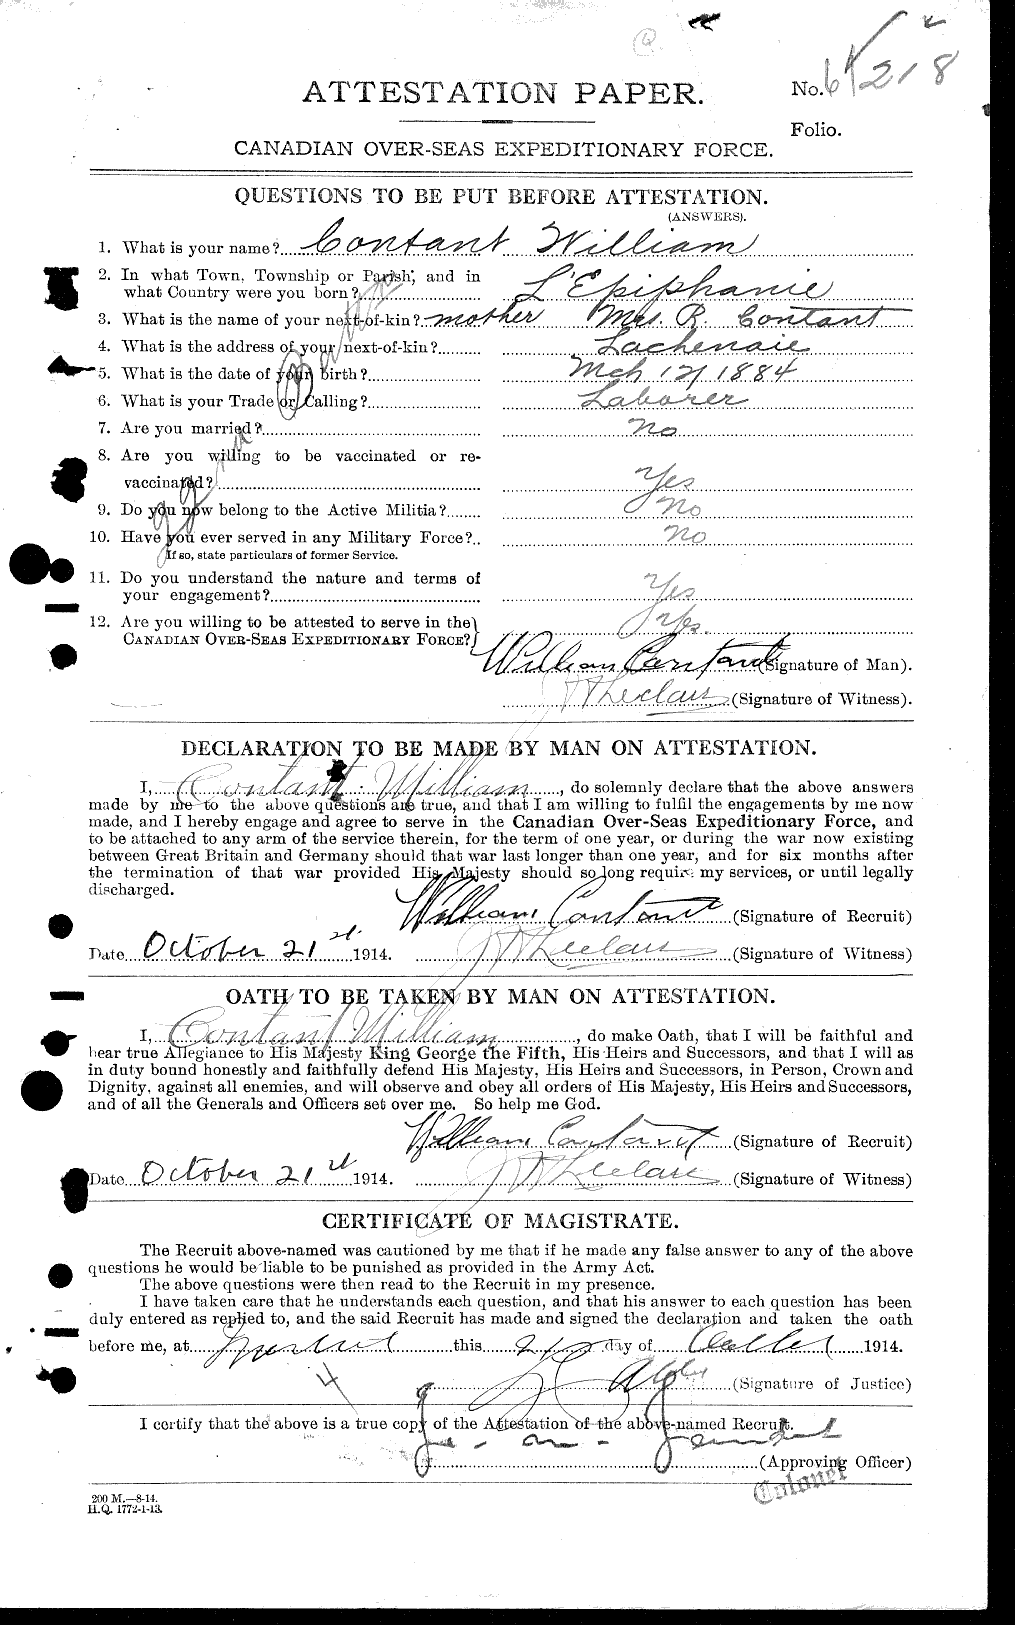 Dossiers du Personnel de la Première Guerre mondiale - CEC 038645a